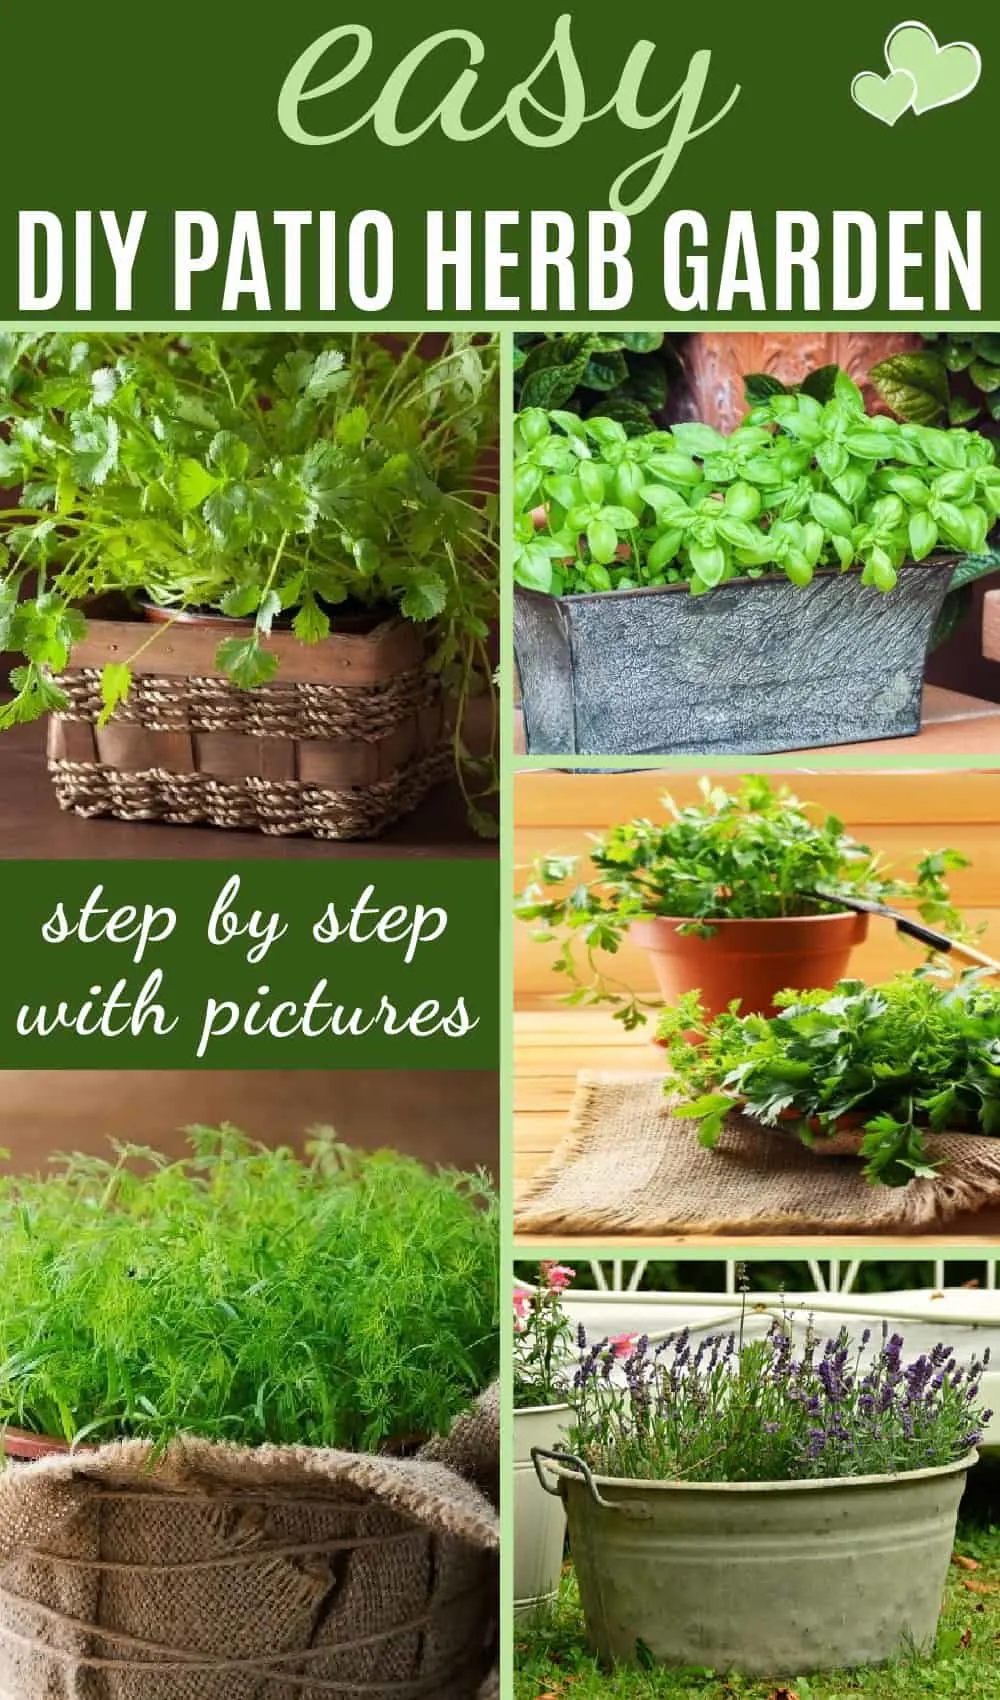 Easy DIY patio herb garden